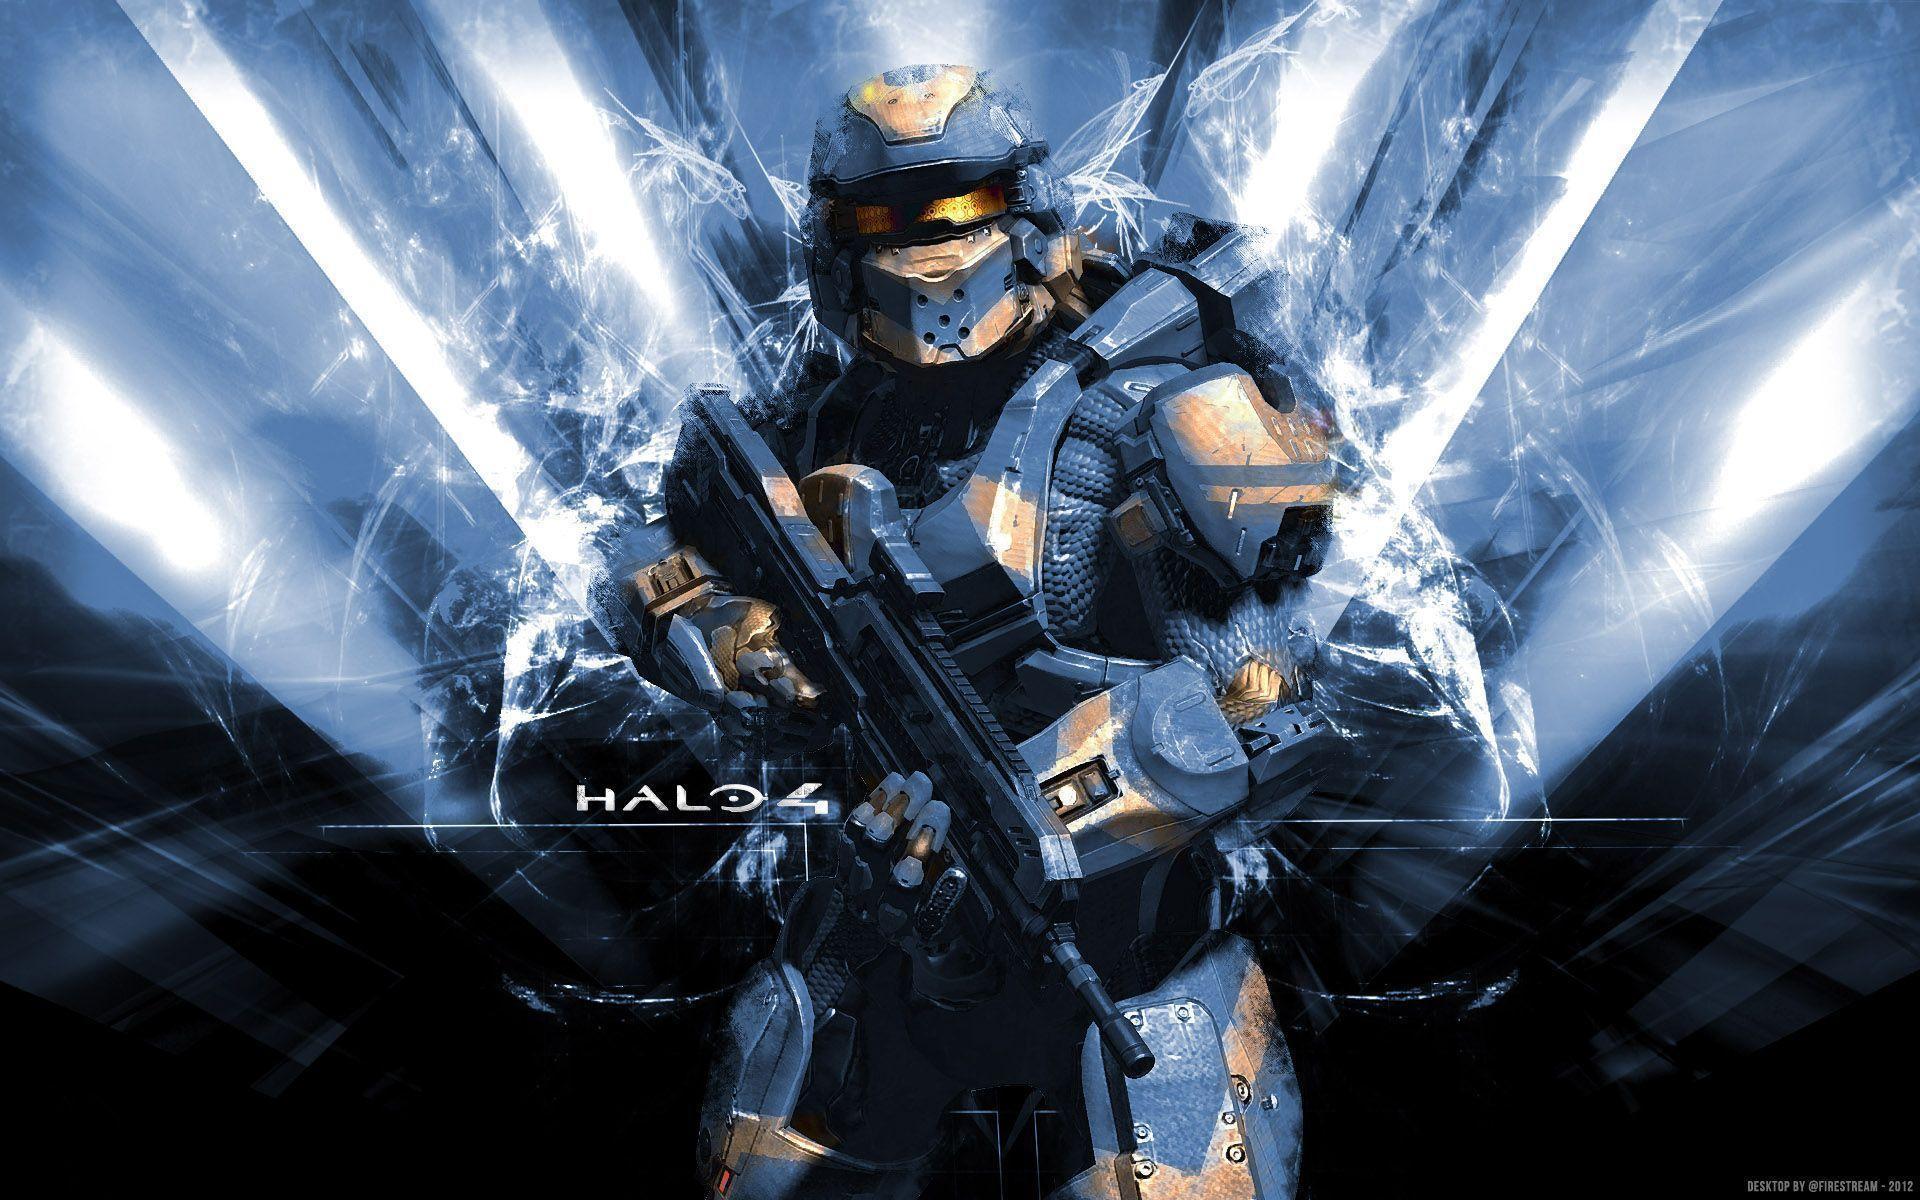 Cool Halo 4 Wallpaper 111355 Best HD Wallpaper. Wallpaiper